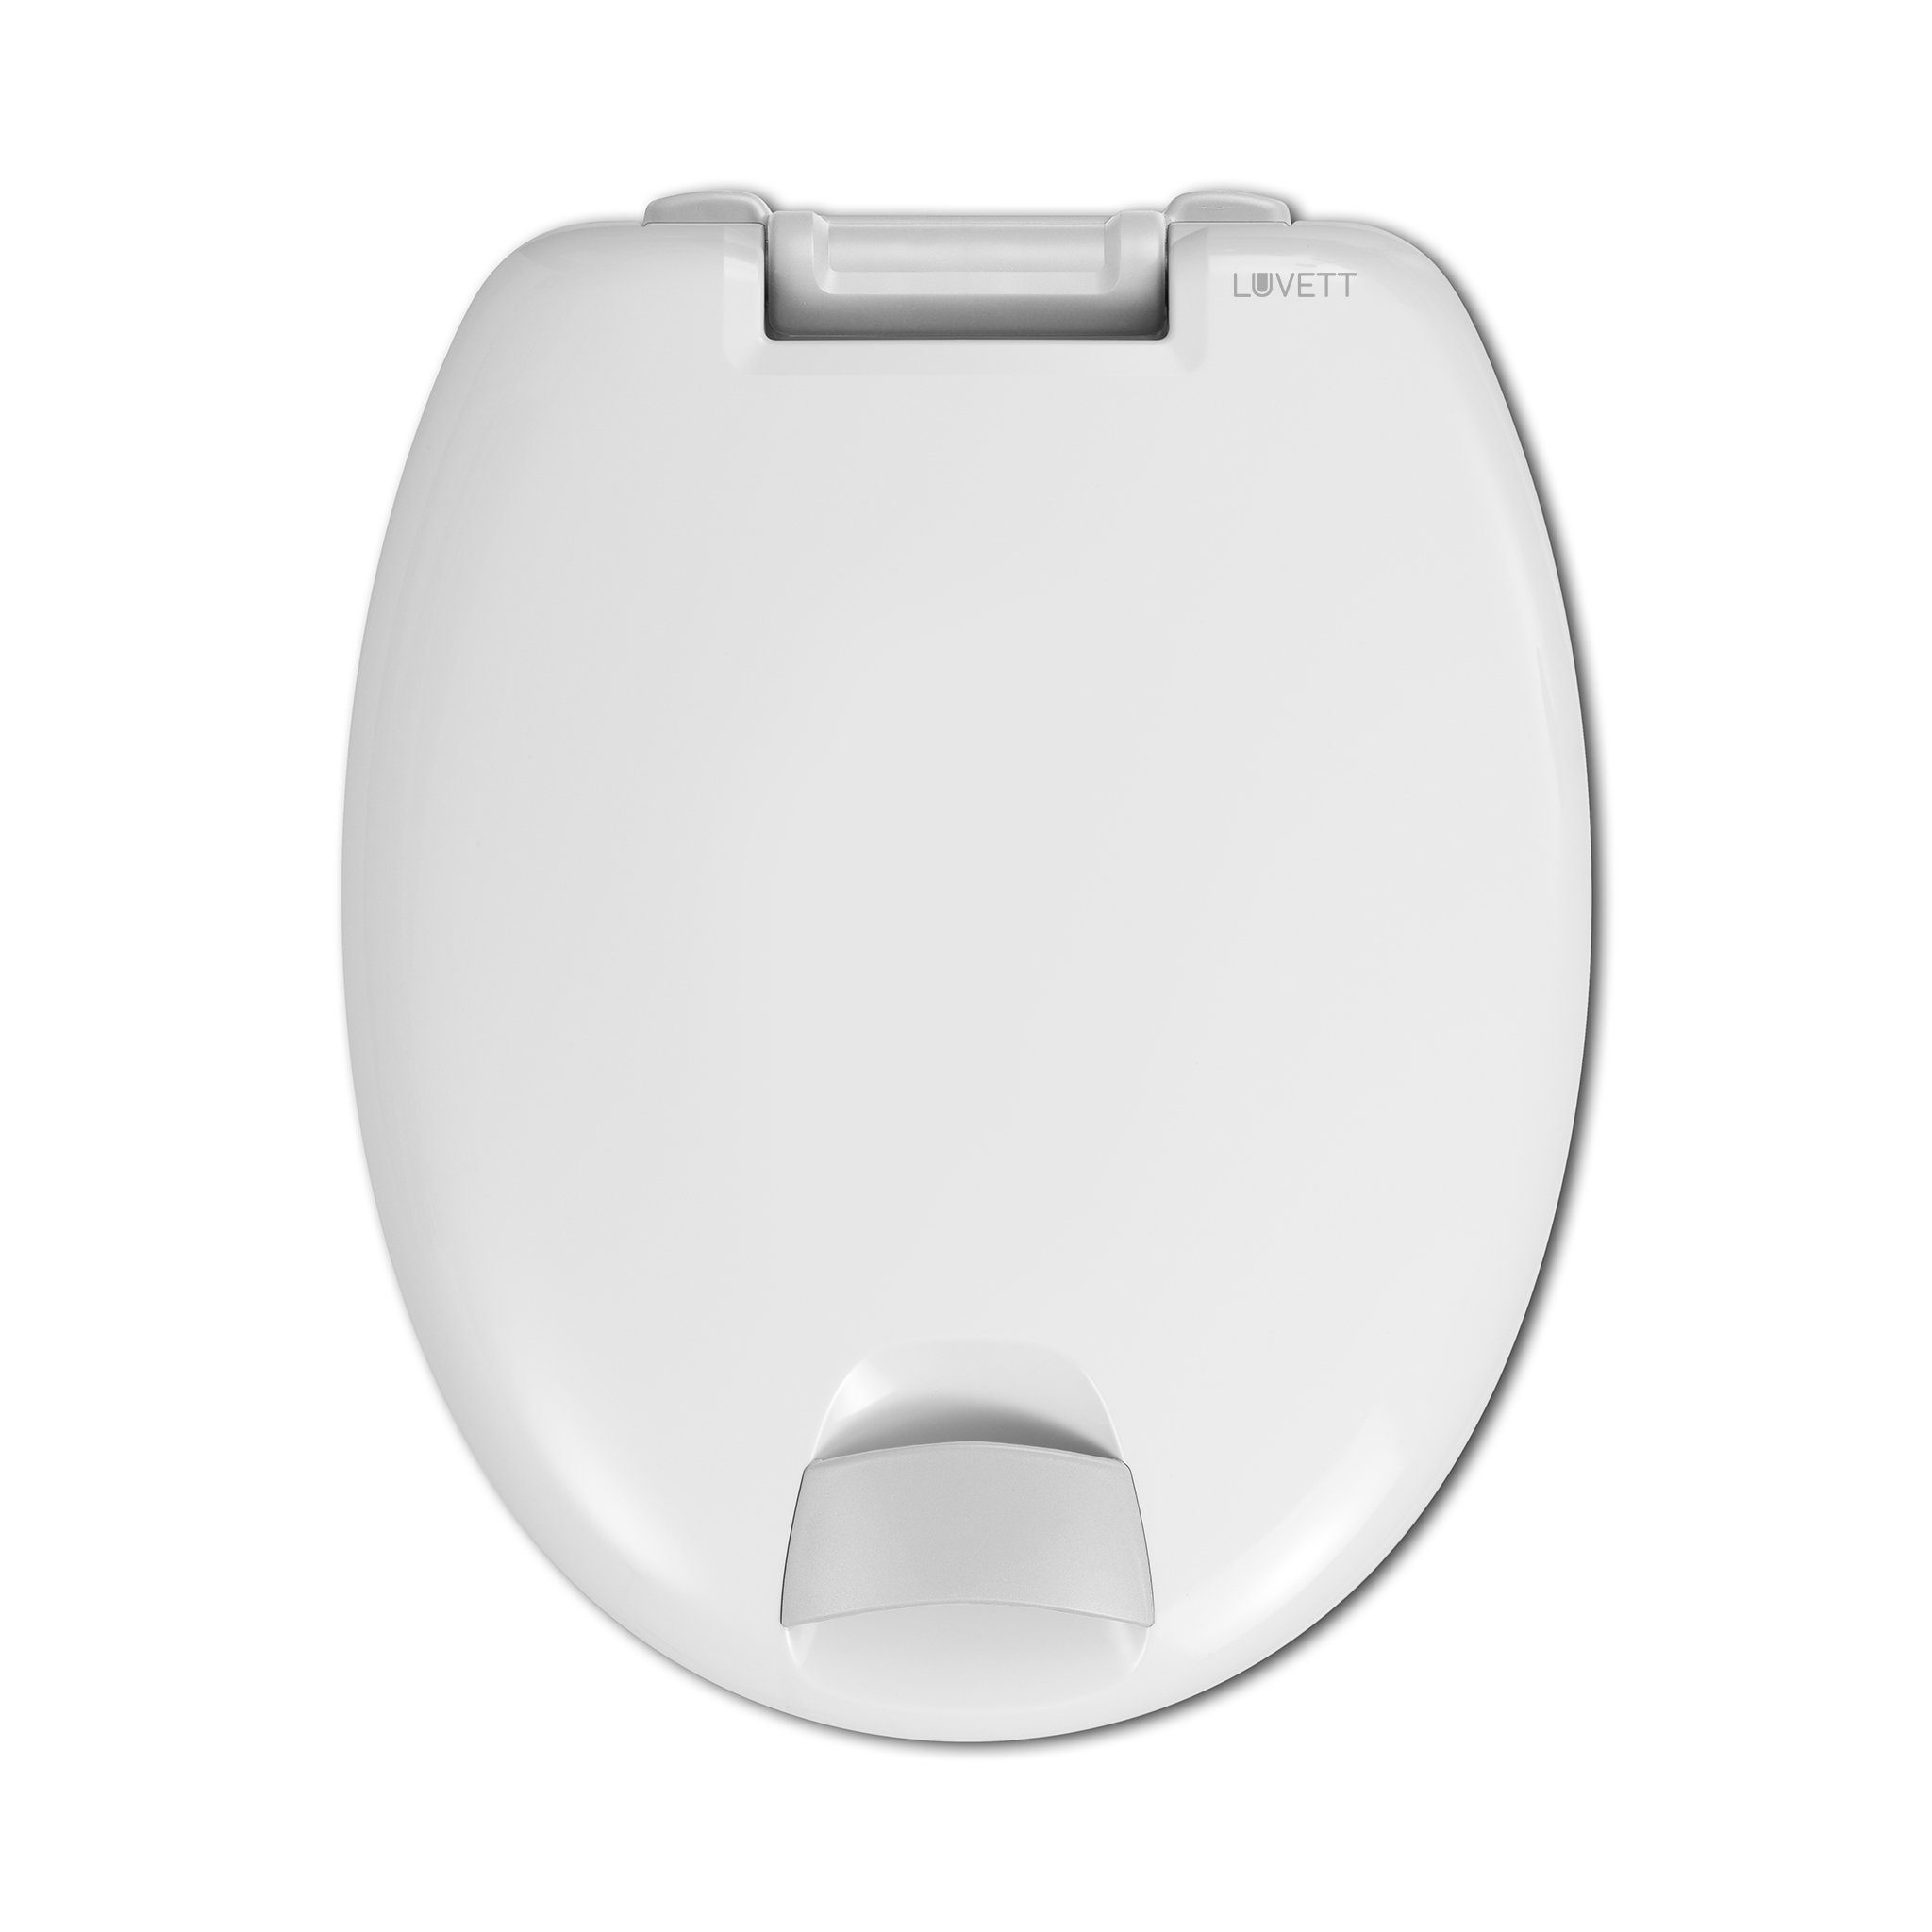 LUVETT WC-Sitz »Senioren« (SolidFix® Befestigung), mit Absenkautomatik,  Sitzerhöhung 5 cm online kaufen | OTTO